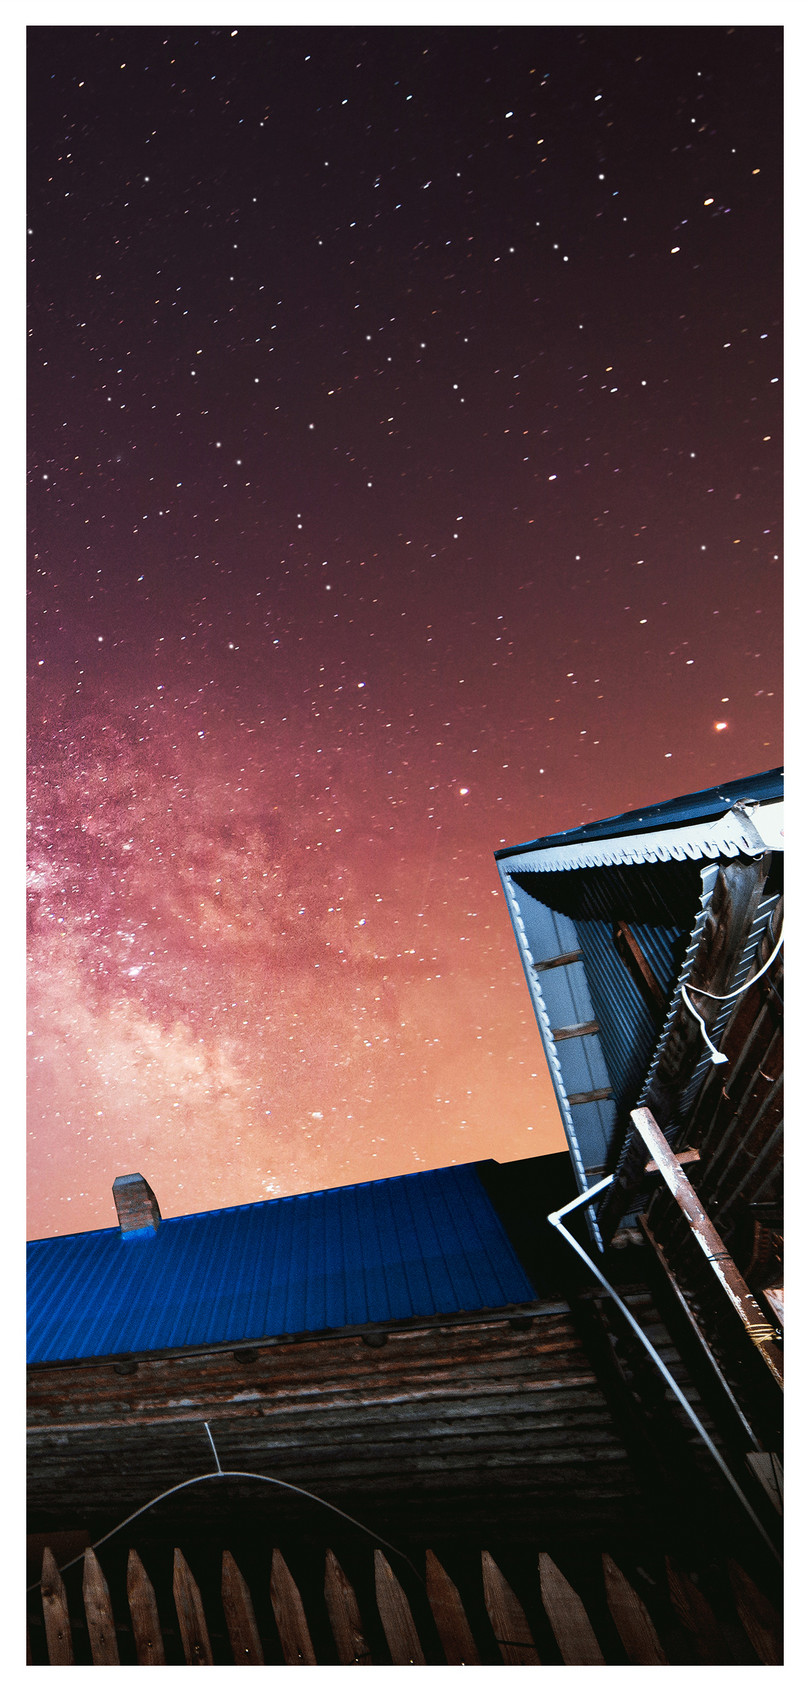 星空建築手機壁紙圖片素材 Jpg圖片尺寸86 300px 高清圖片 Zh Lovepik Com